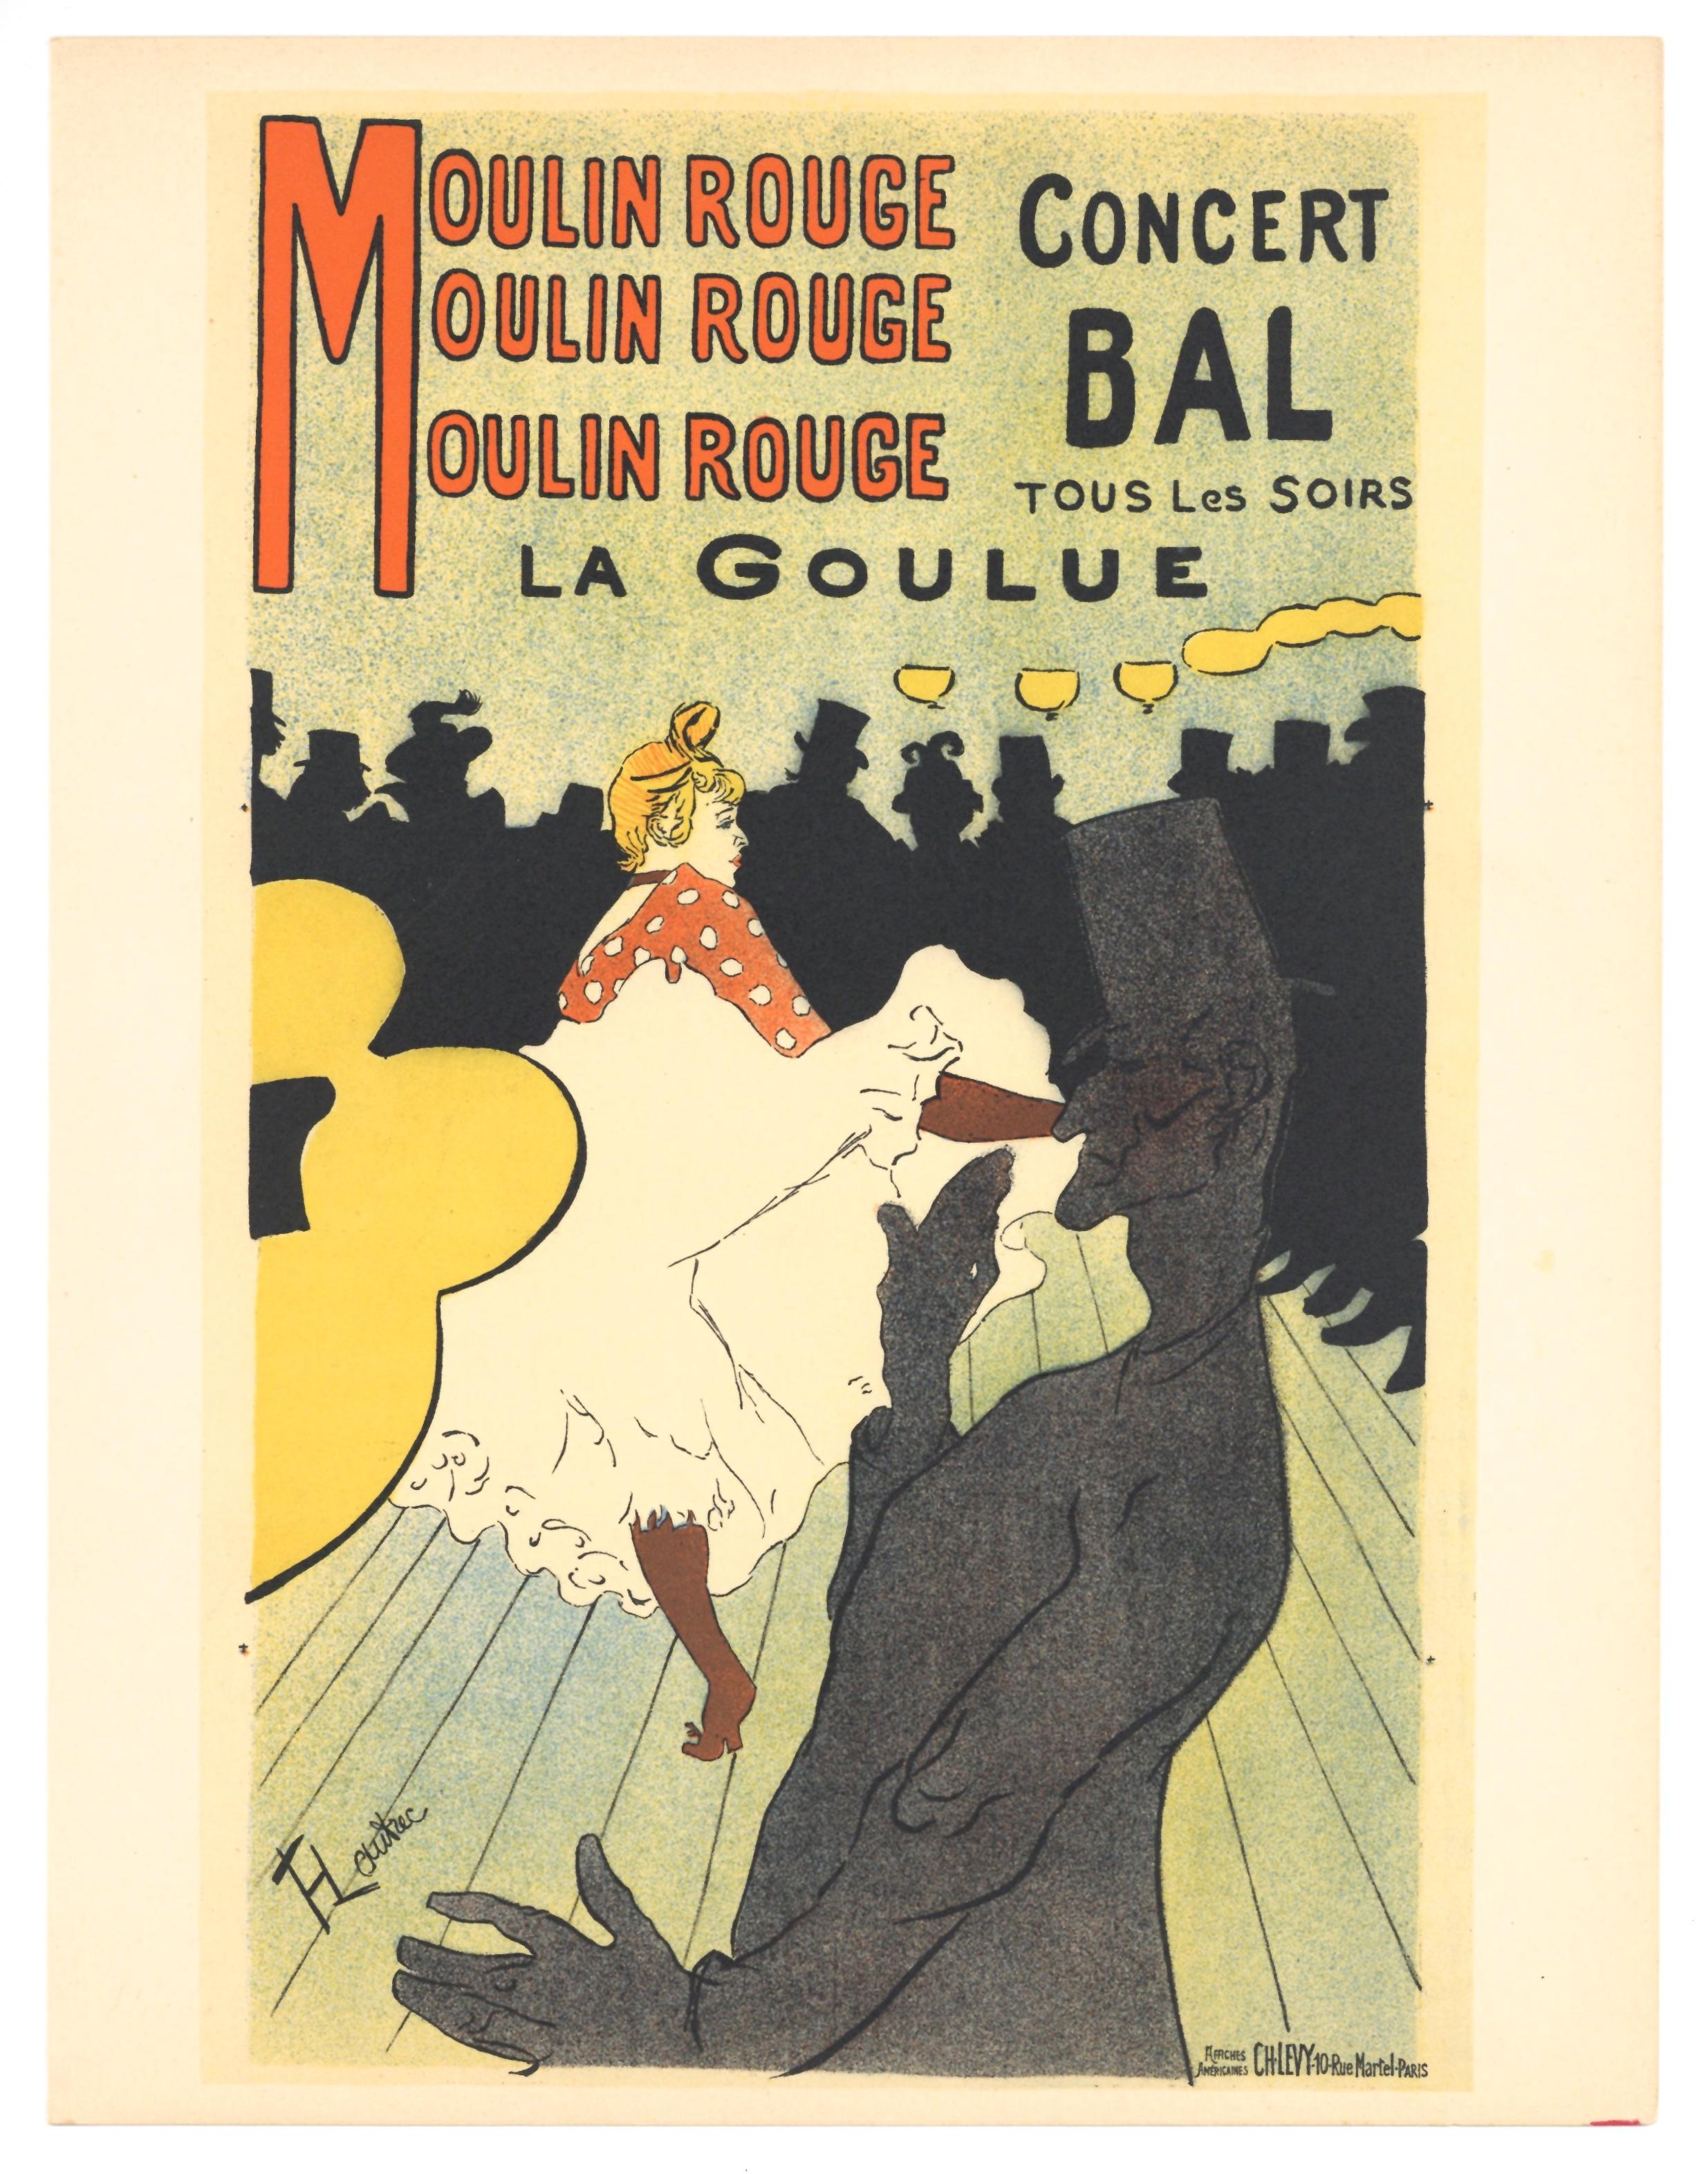 "Moulin Rouge - La Goulue" plus Decompositions de couleurs - affiche lithographique - Print de (After) Henri Toulouse Lautrec